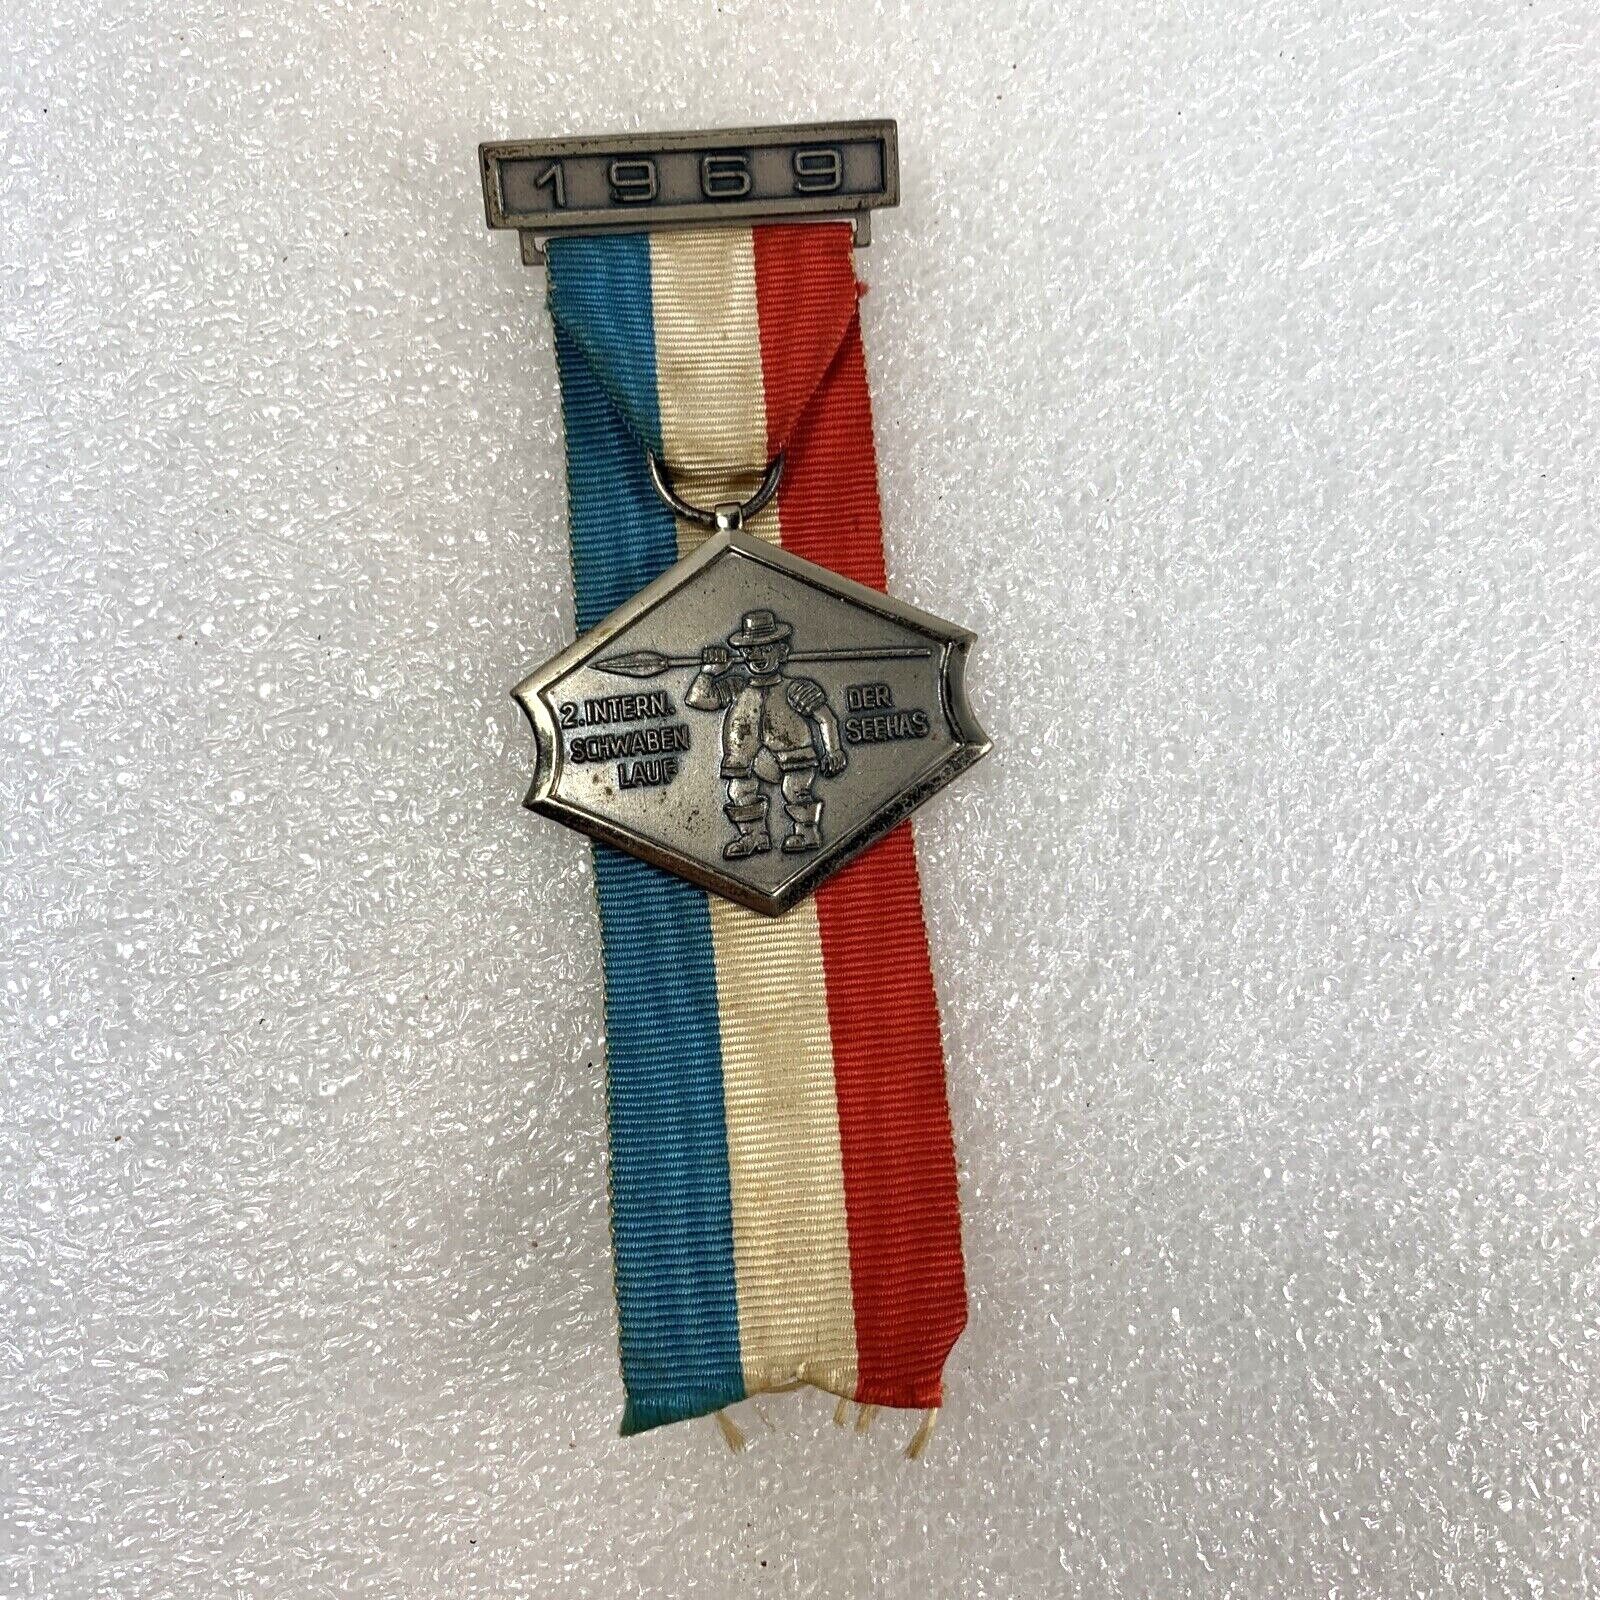 1969 France Fussball Club Haunstetten 7 Schwaben Badge Pin Der Seehas Dchwaben